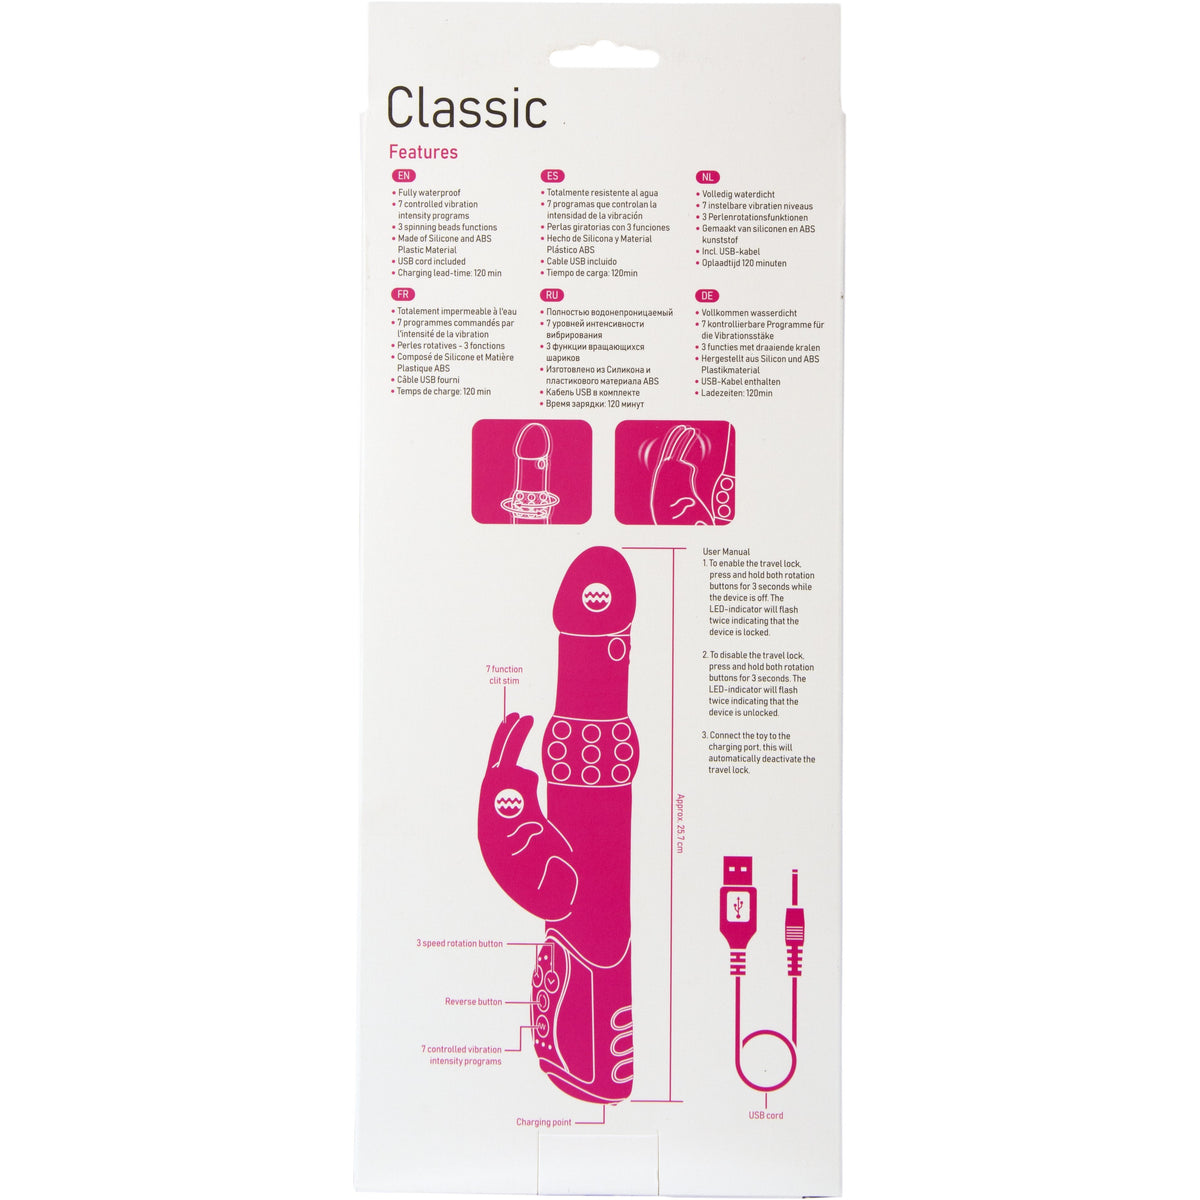 e.Rabbit Classic Rabbit Vibrator - Pink